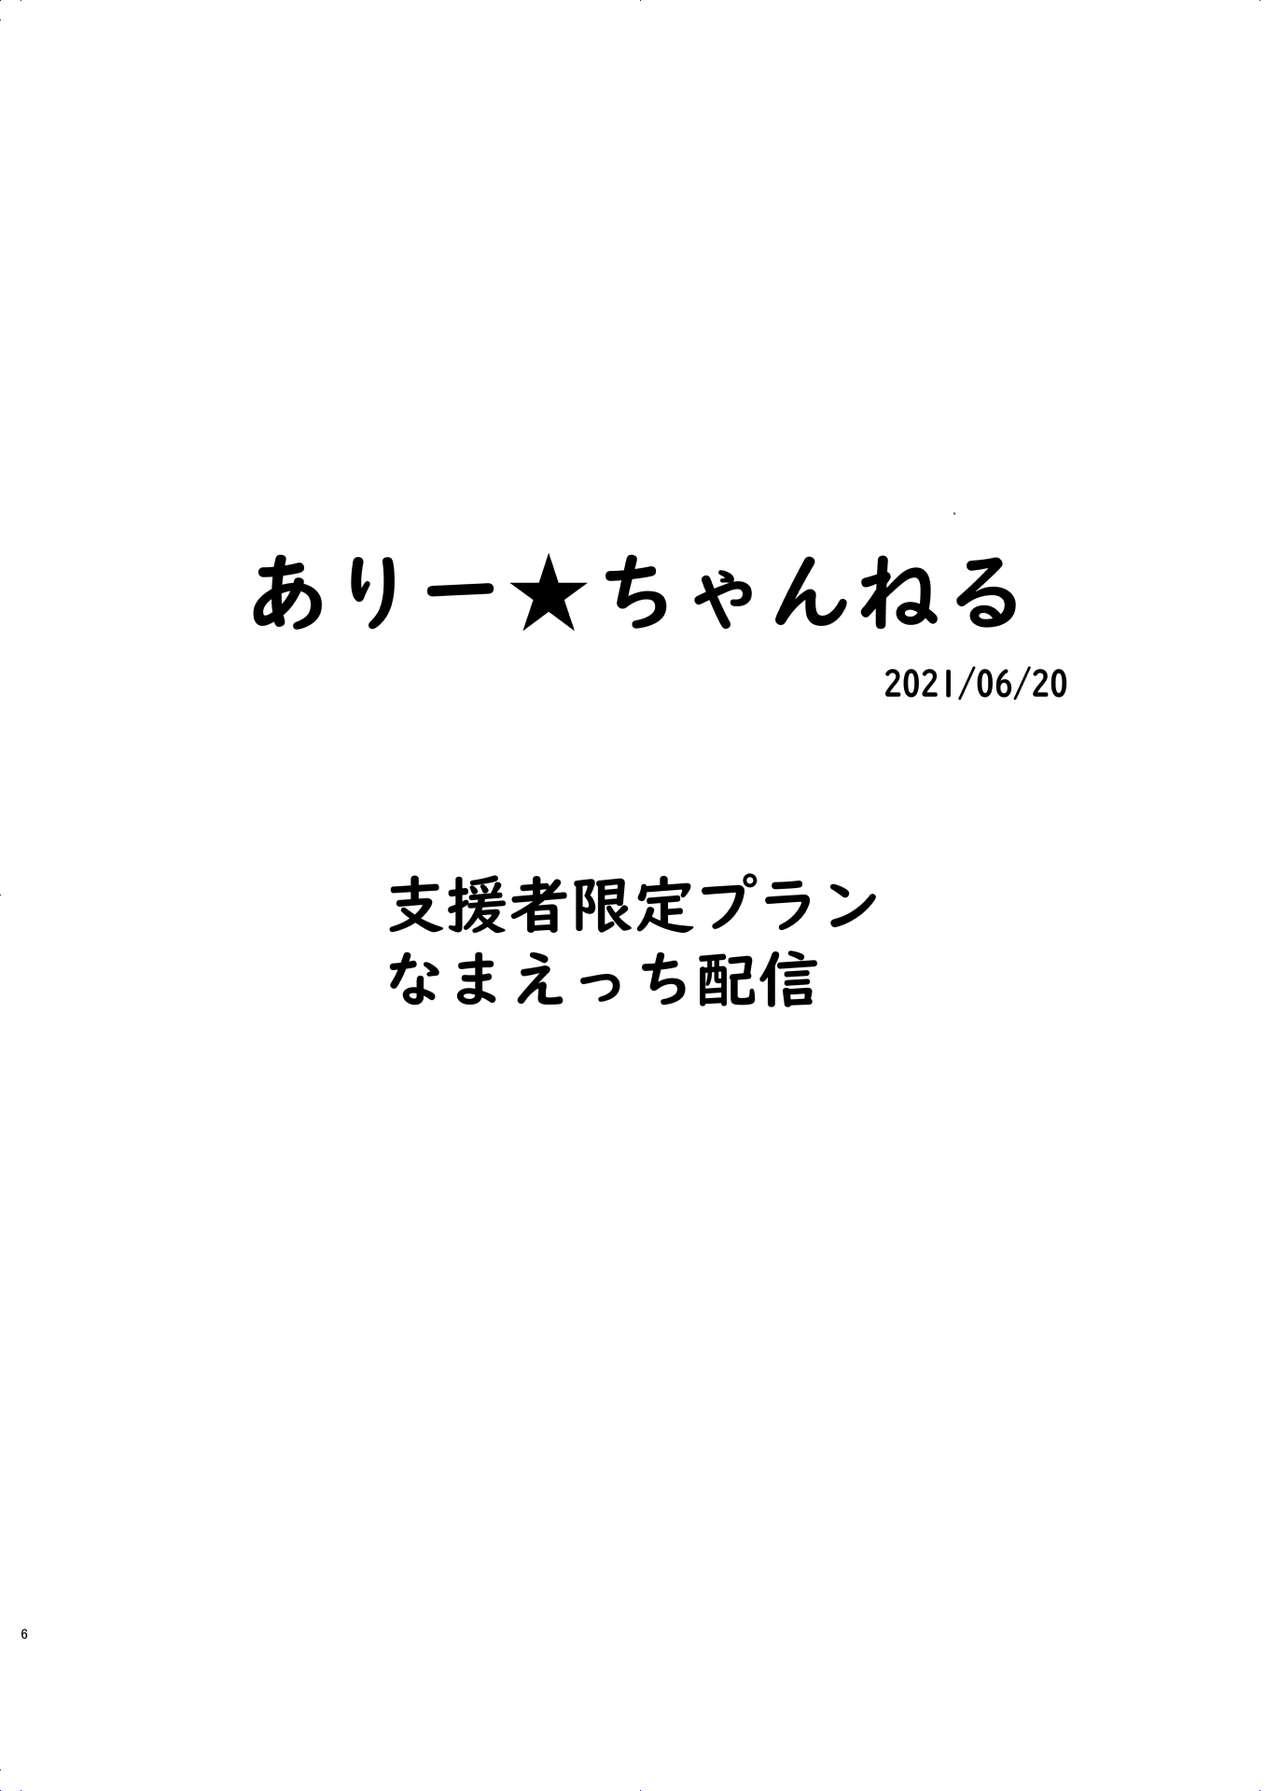 Girlnextdoor Ari Channel 20210620 Shiensha Gentei Plan Nama Ecchi Haishin - Original Oldvsyoung - Page 6